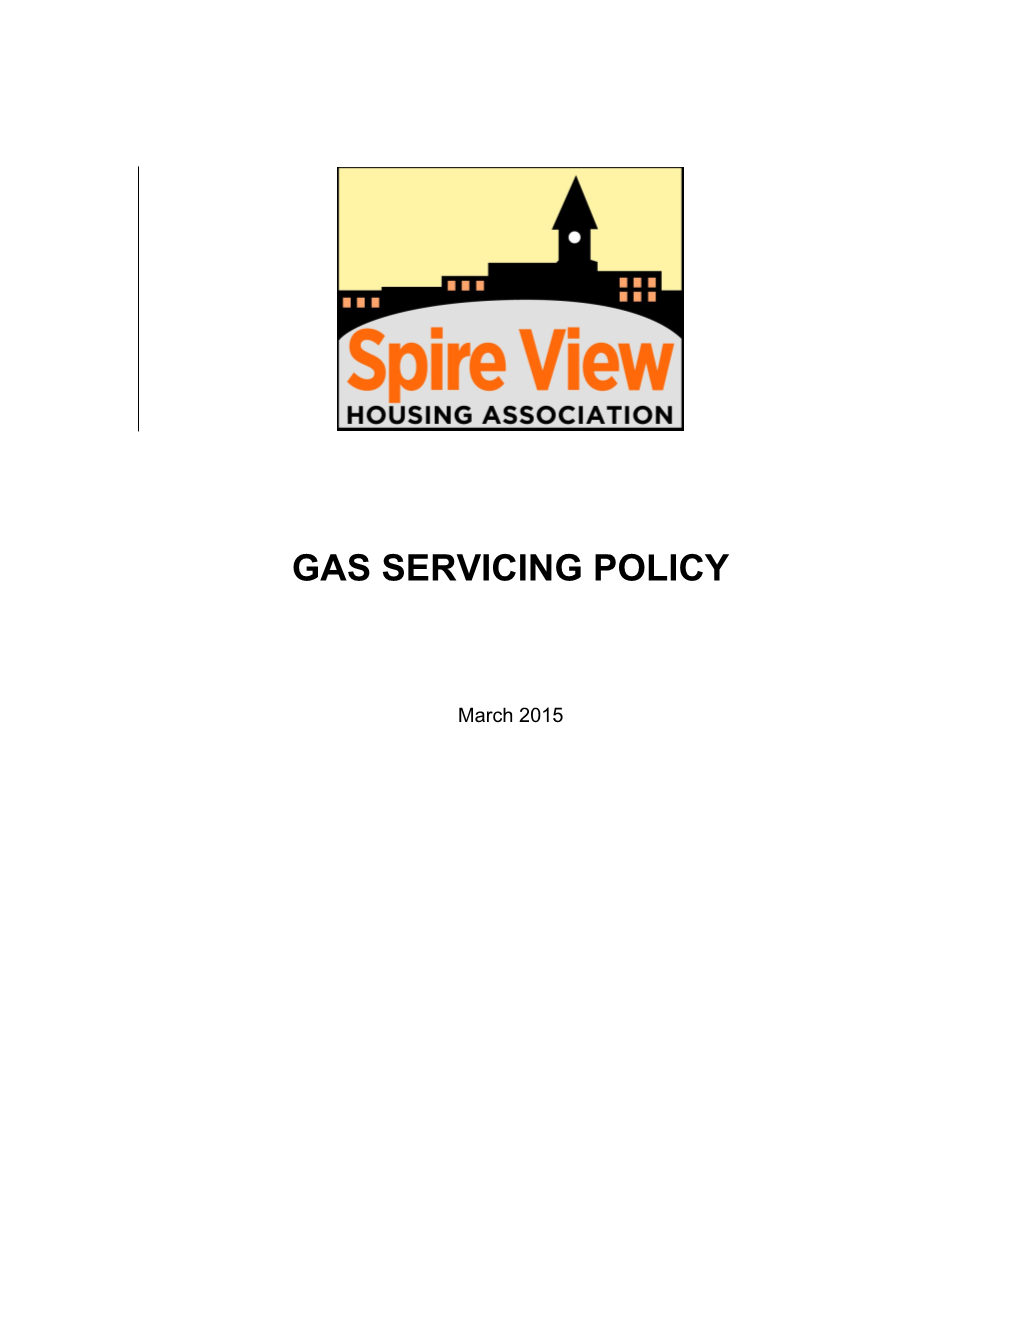 Gas Service Procedure